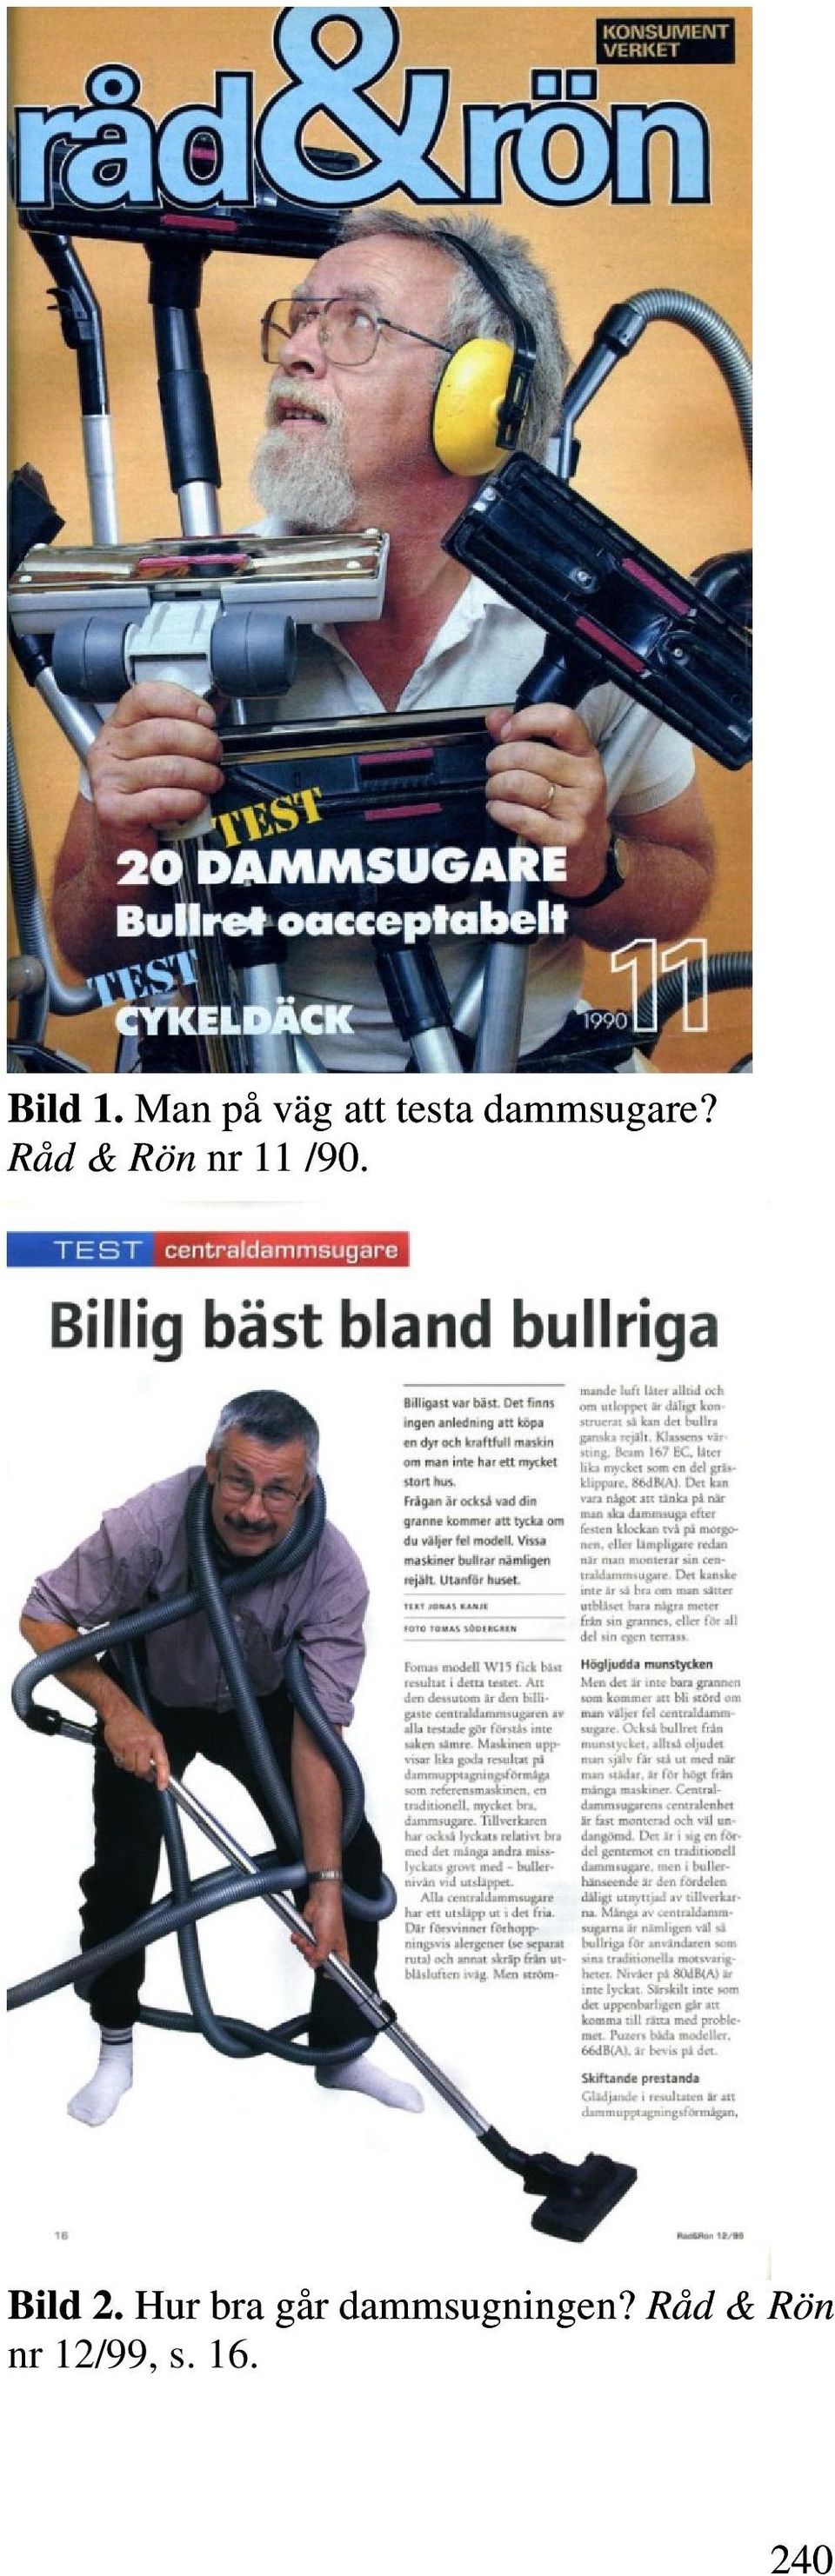 Dammsugarens gestaltning i tidskriften Råd & Rön - PDF Free Download